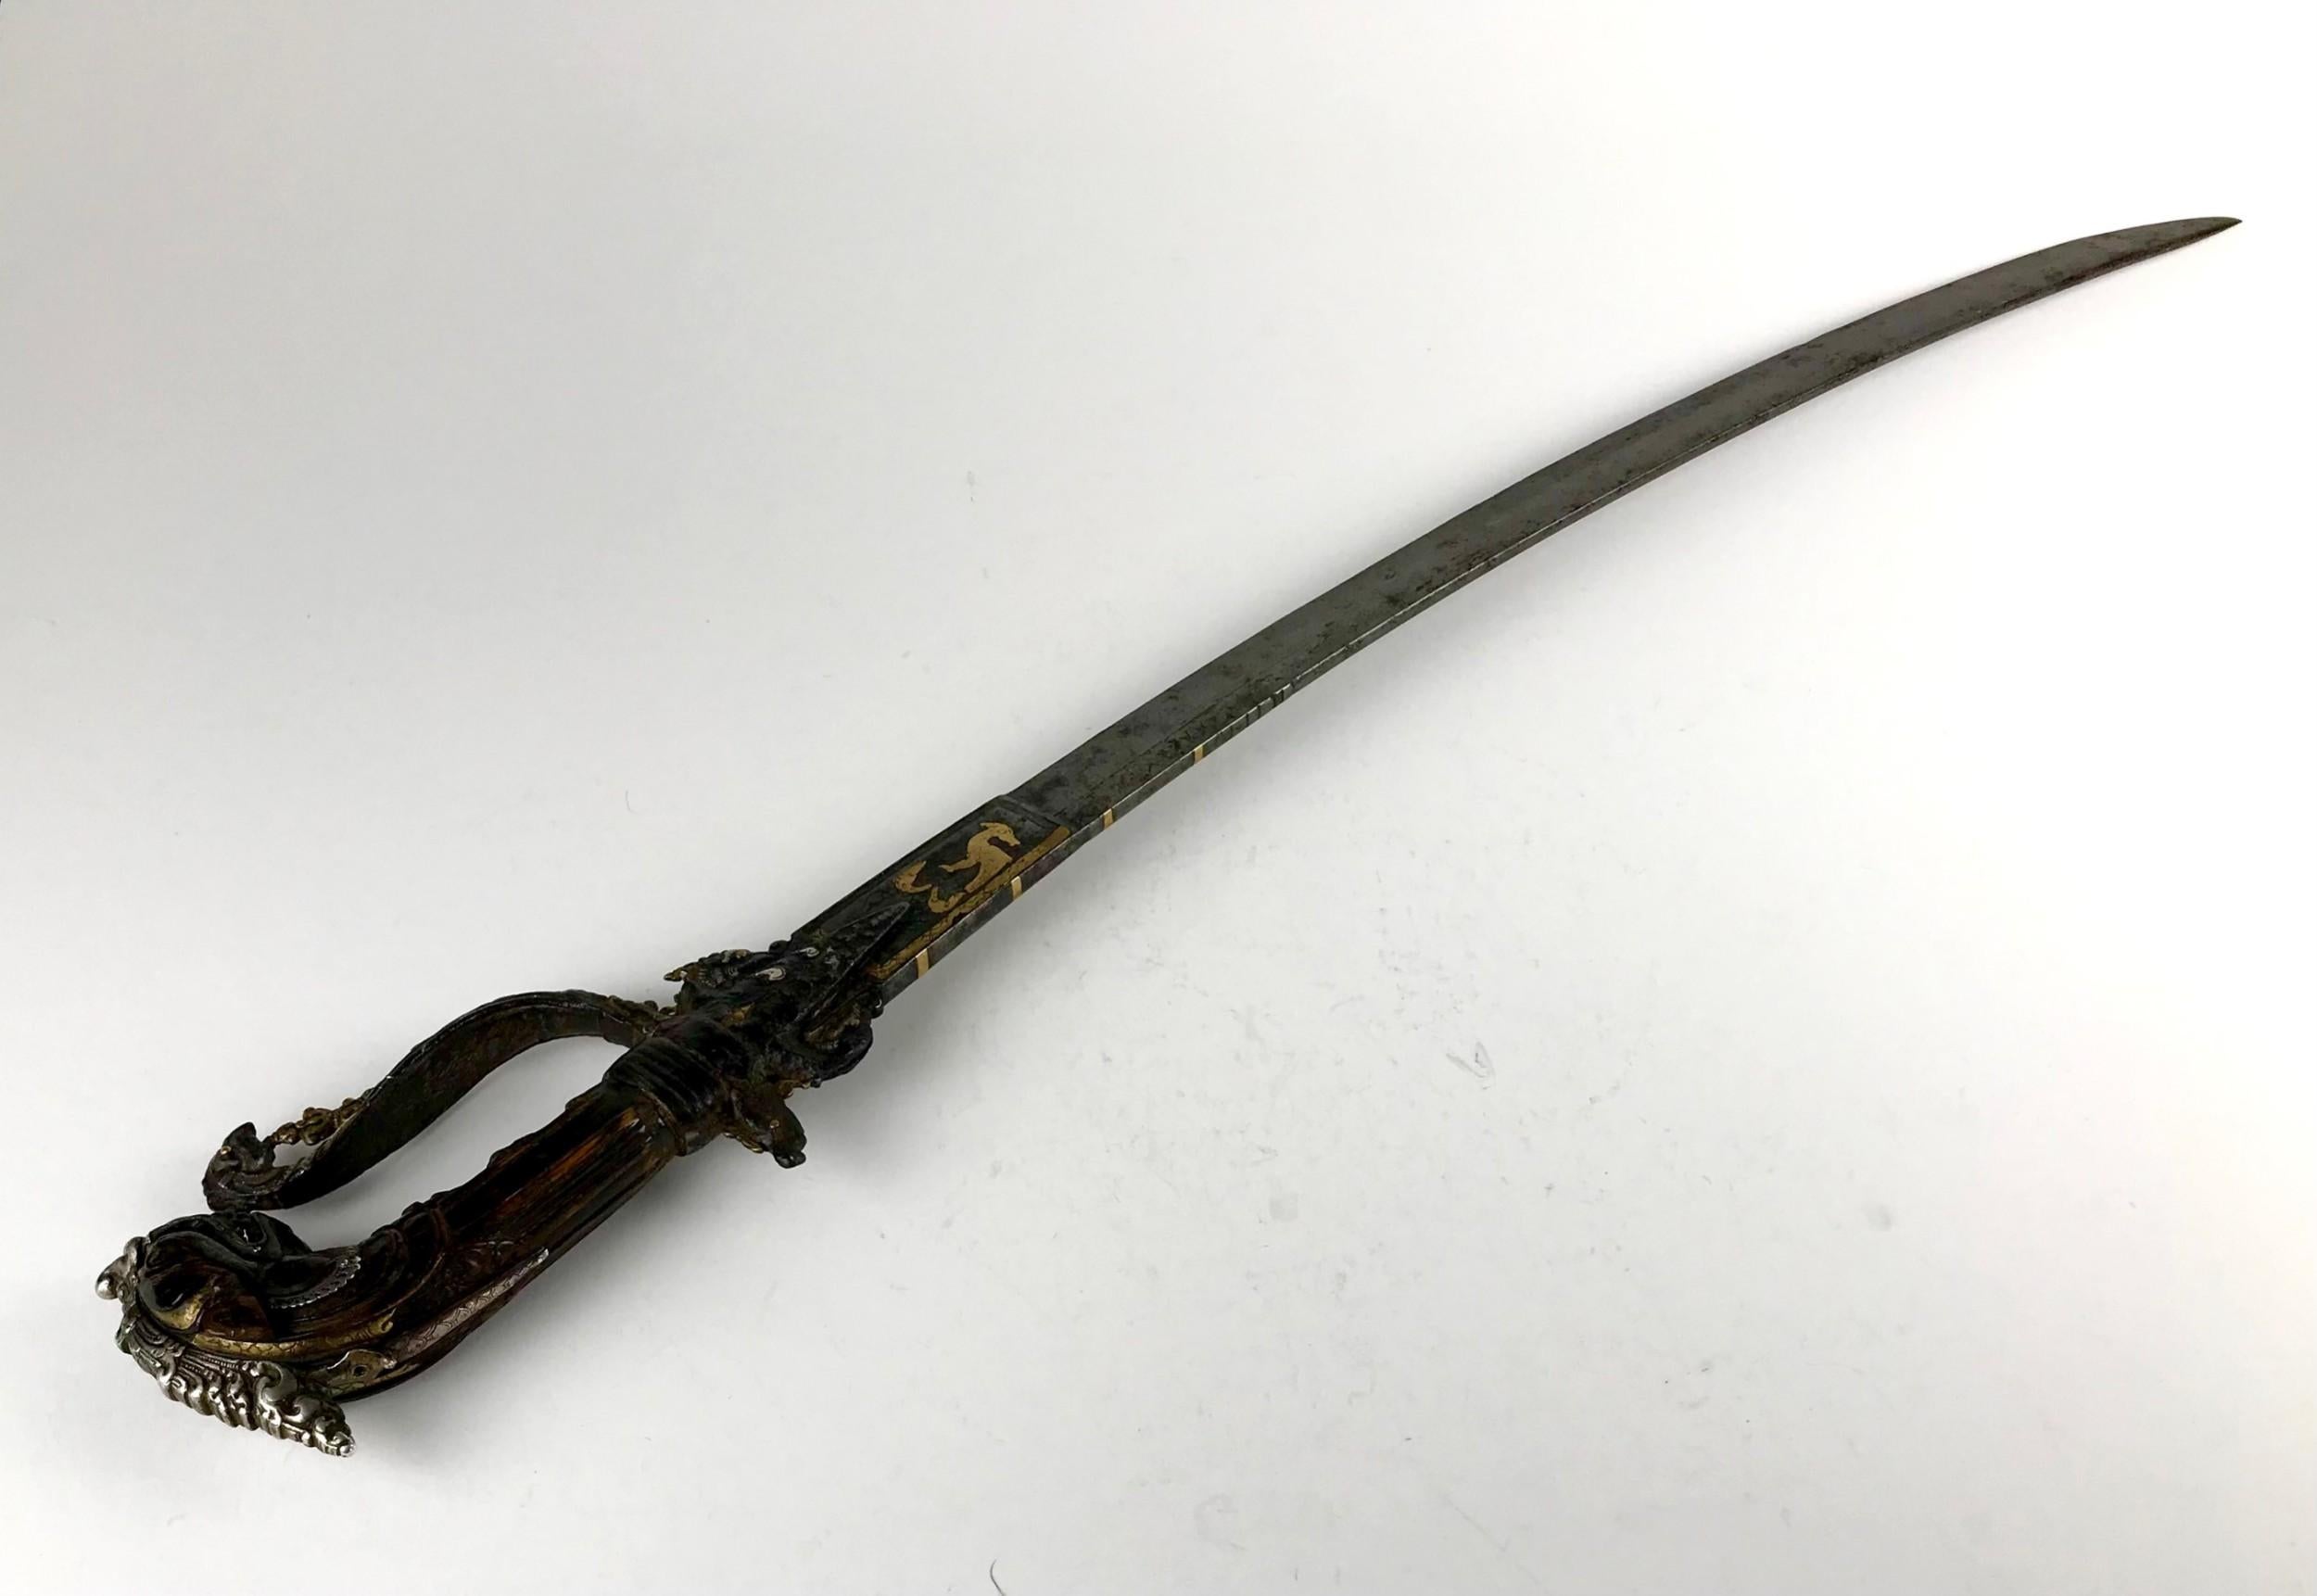 kastane sword for sale